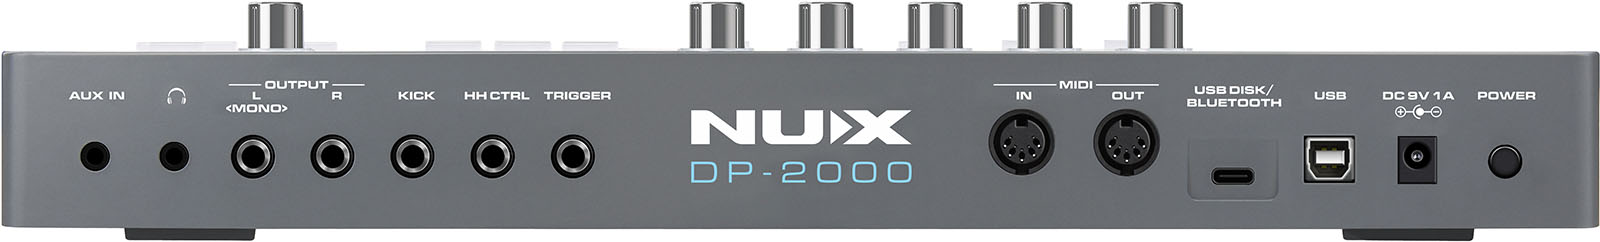 Nux Dp-2000 Multi Pad - Elektronisch drumstel multi-pad - Variation 1